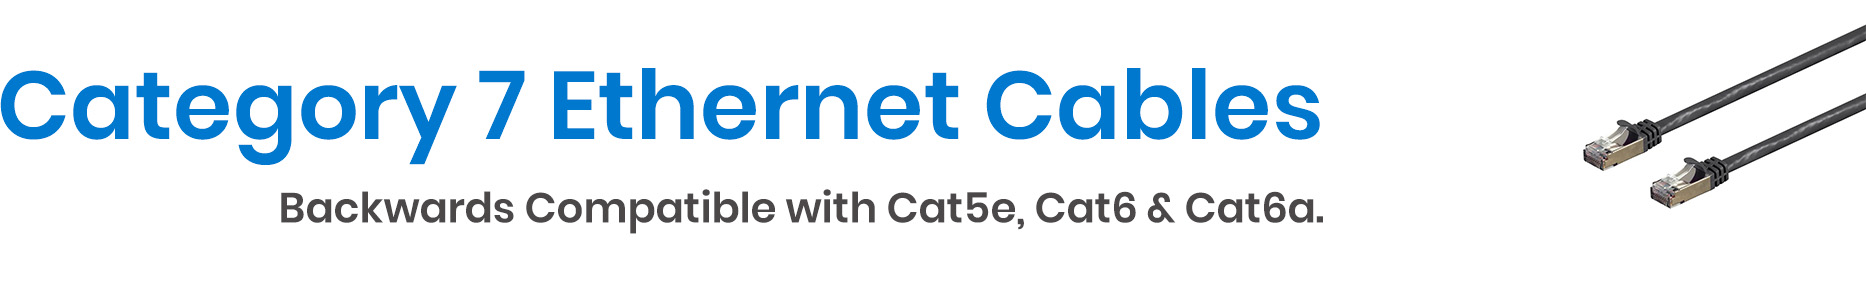 Cat7 Ethernet Cables - Patch Cables